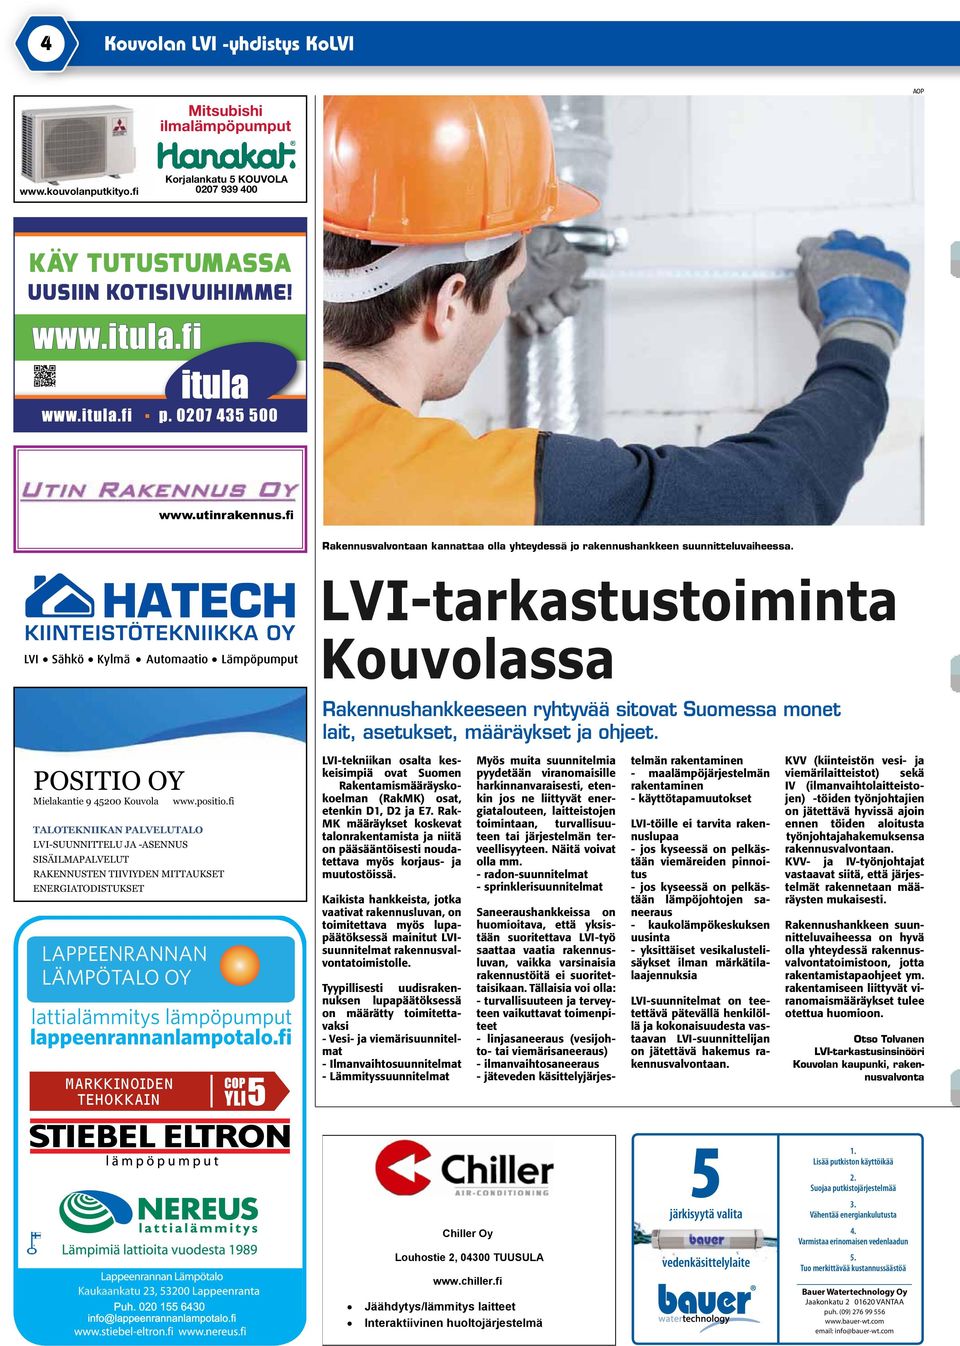 LVI Sähkö Kylmä Automaatio Lämpöpumput LVI-tarkastustoiminta Kouvolassa Rakennushankkeeseen ryhtyvää sitovat Suomessa monet lait, asetukset, määräykset ja ohjeet.